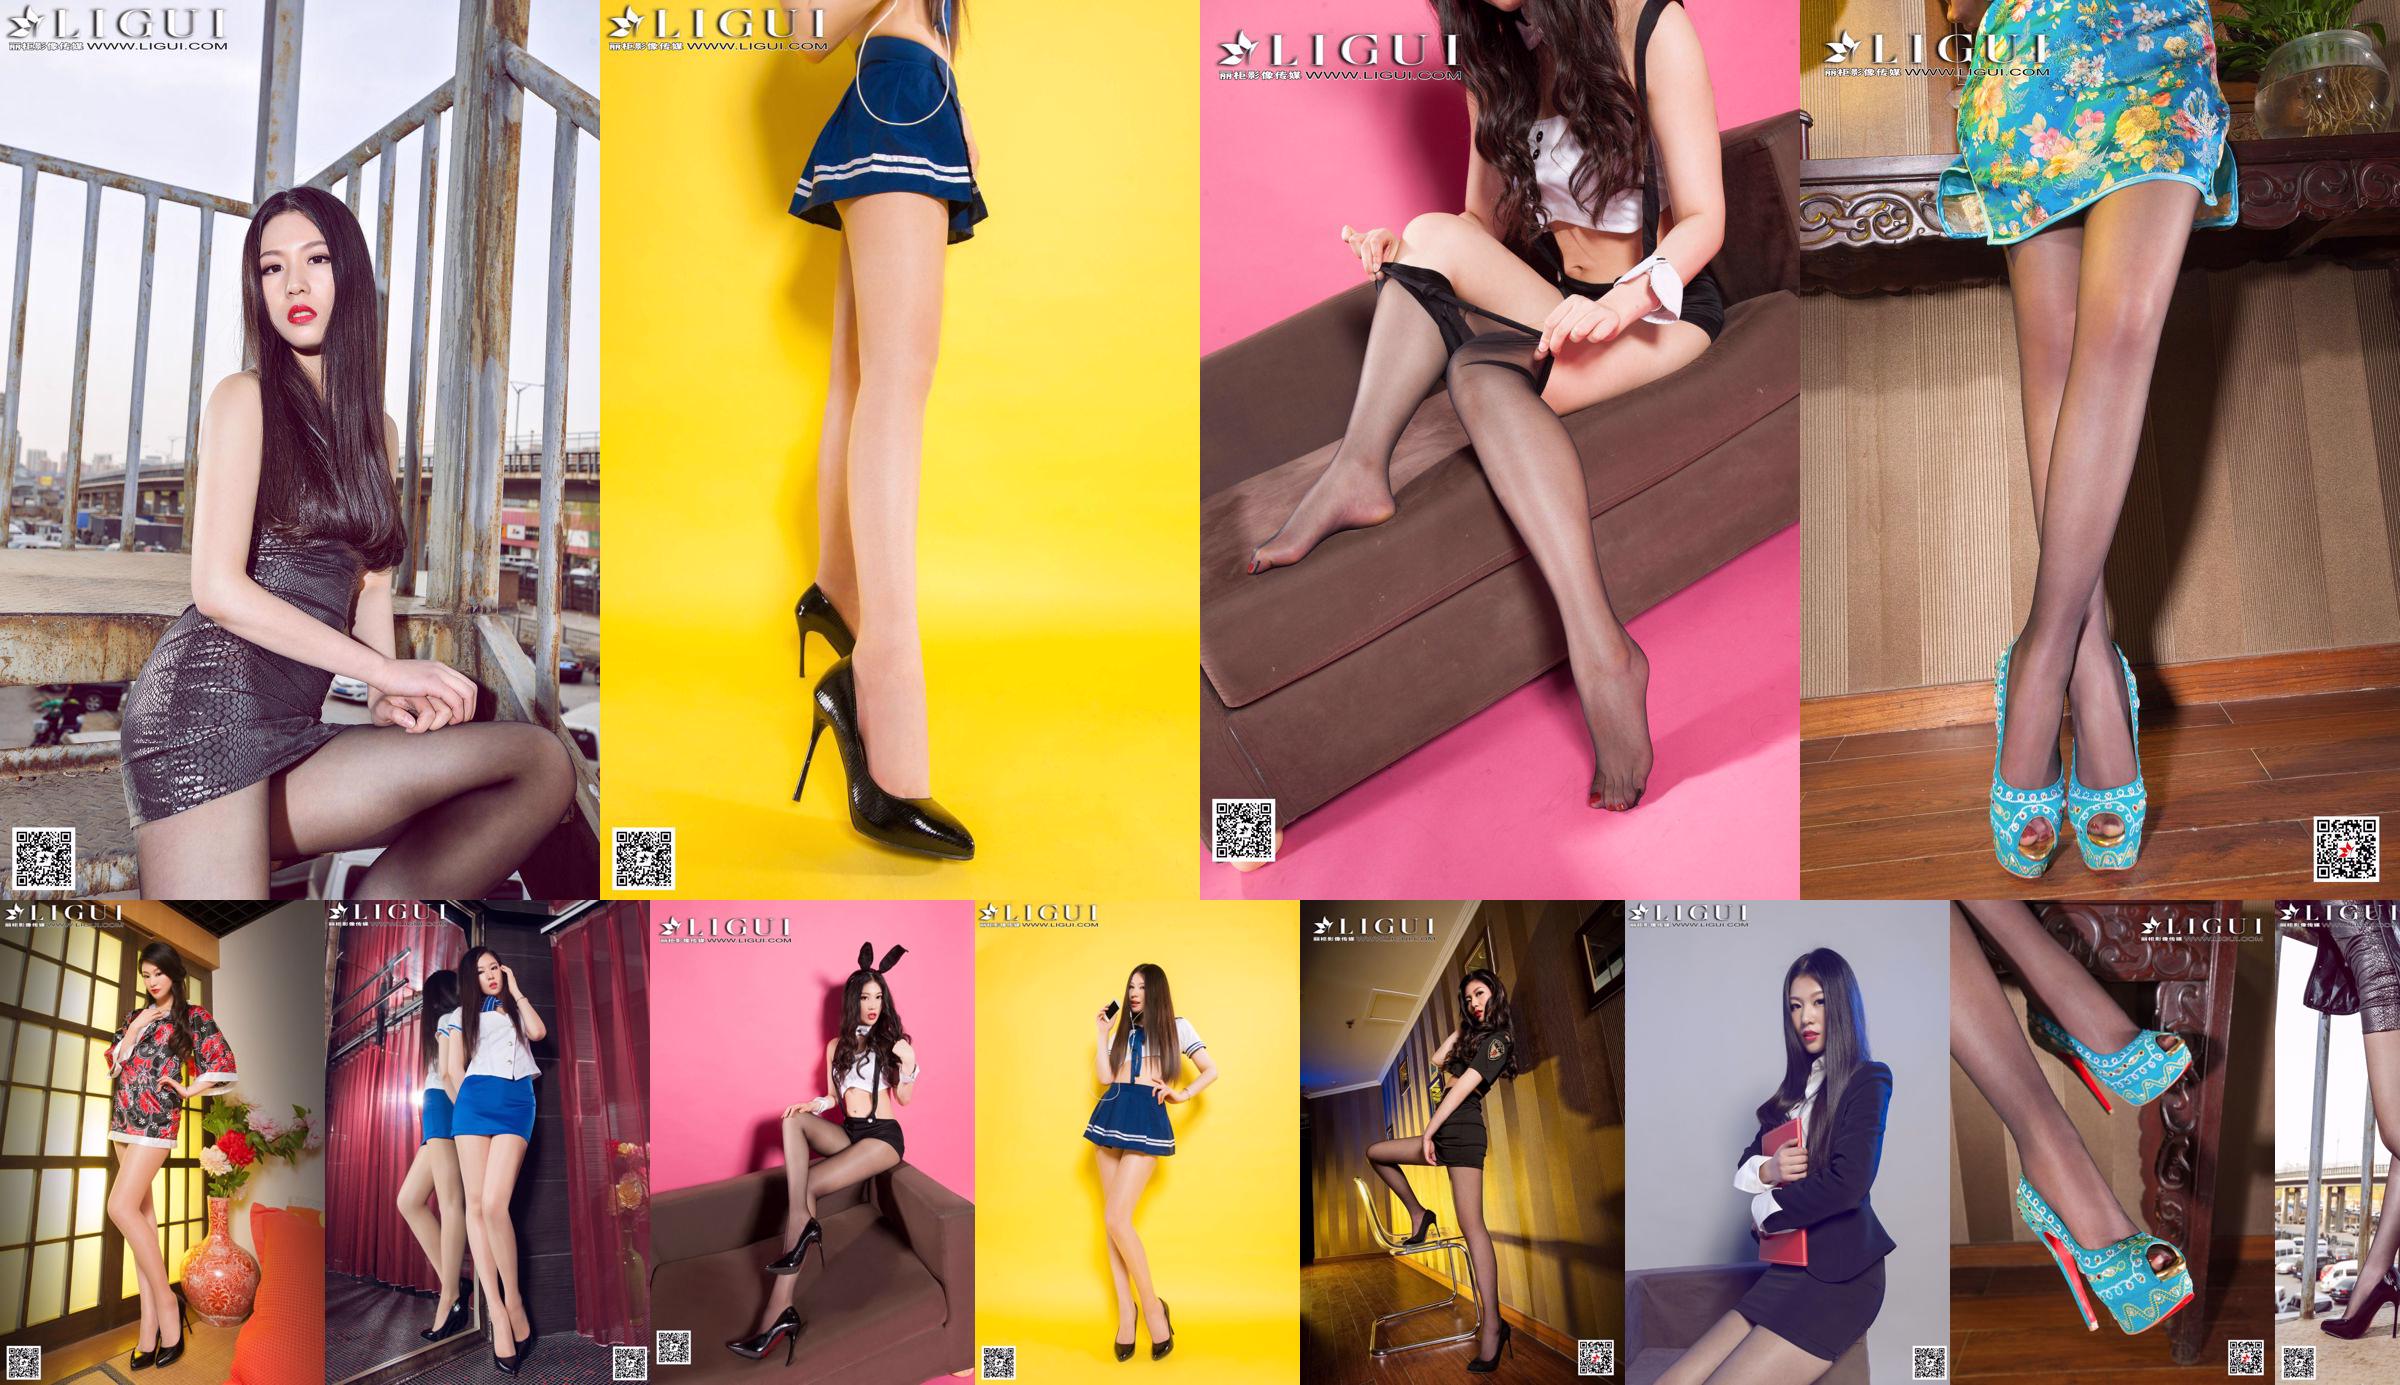 Model Jiayi "High-Heels Policewoman Silk Foot aus schwarzer Seide" Sämtliche Arbeiten [丽 柜 LiGui] Foto von schönen Beinen und Jadefüßen No.4744b8 Seite 1